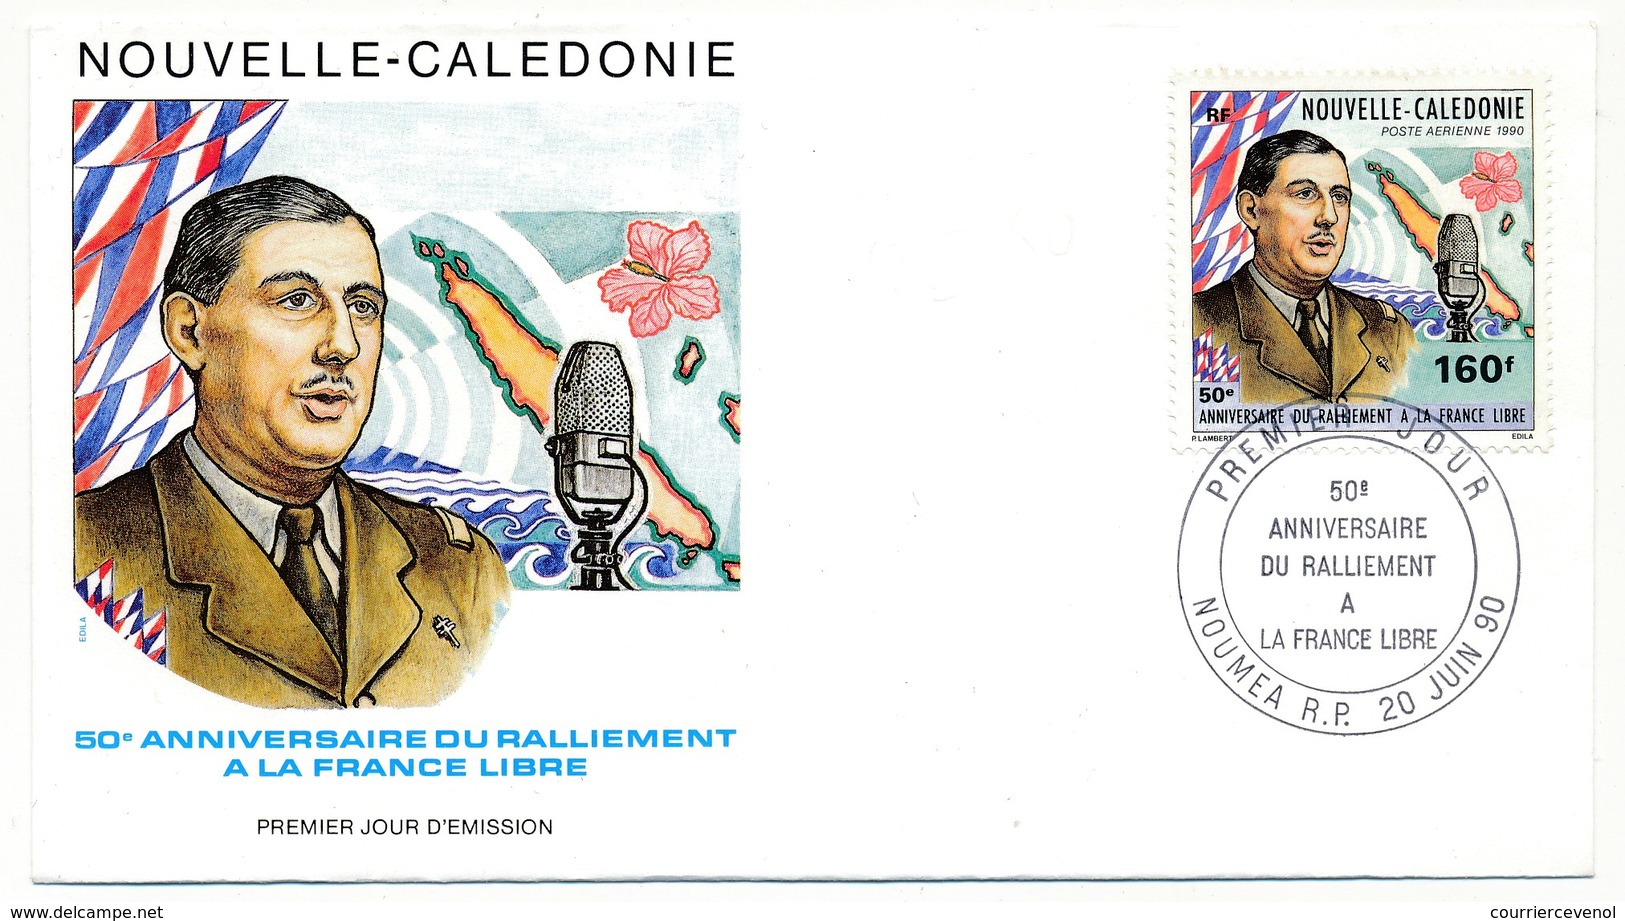 NOUVELLE CALEDONIE -  Enveloppe FDC - 50eme Anniversaire Du Ralliement à La France Libre - NOUMEA 20/06/1990 - De Gaulle (Generale)